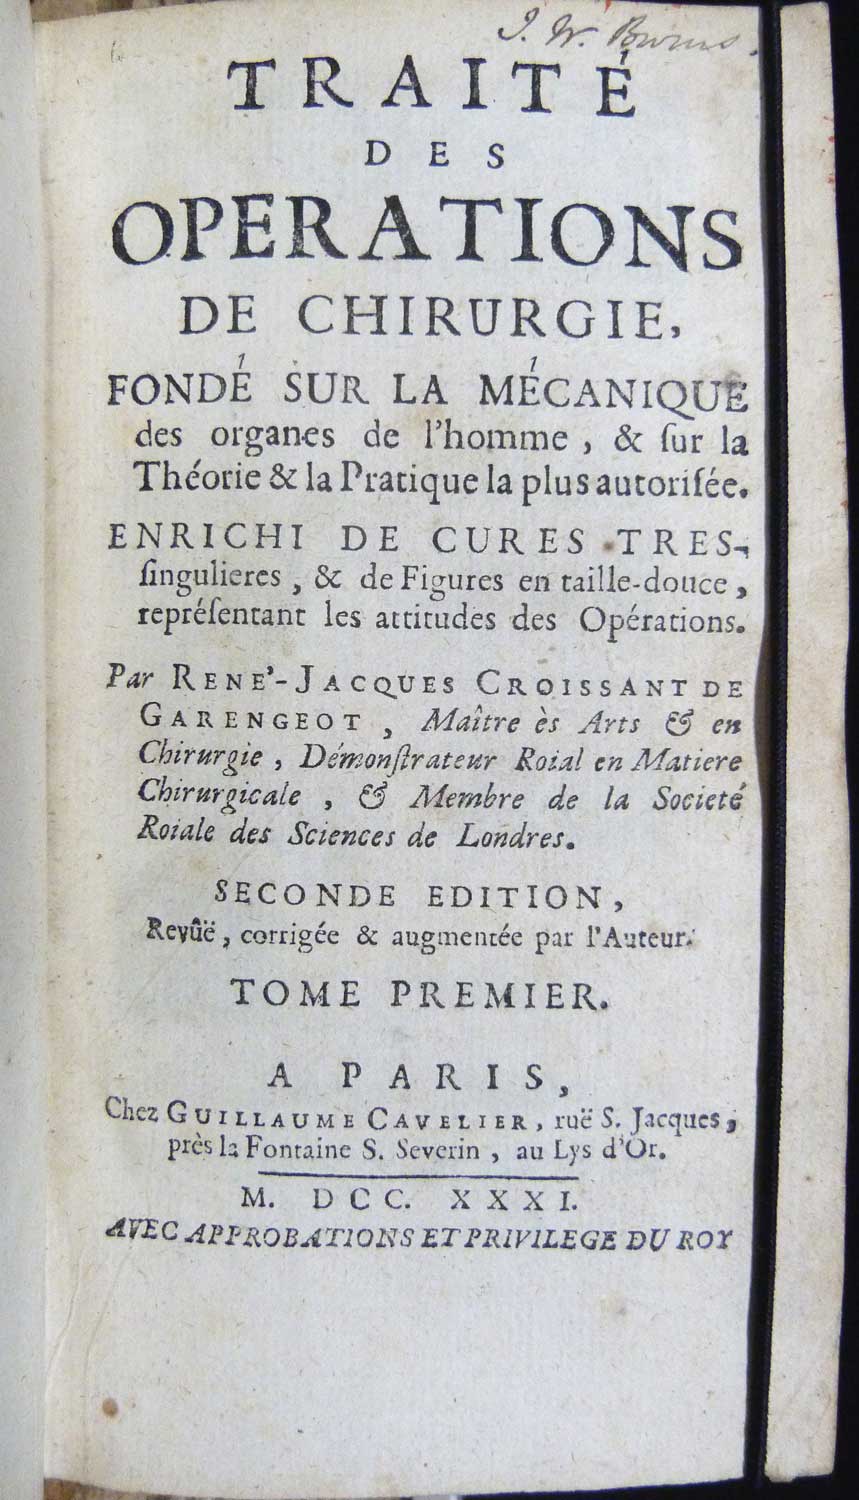 Traite Des Operations Chirurgie Fondé Sur La Mechanique. Two volumes (of three).